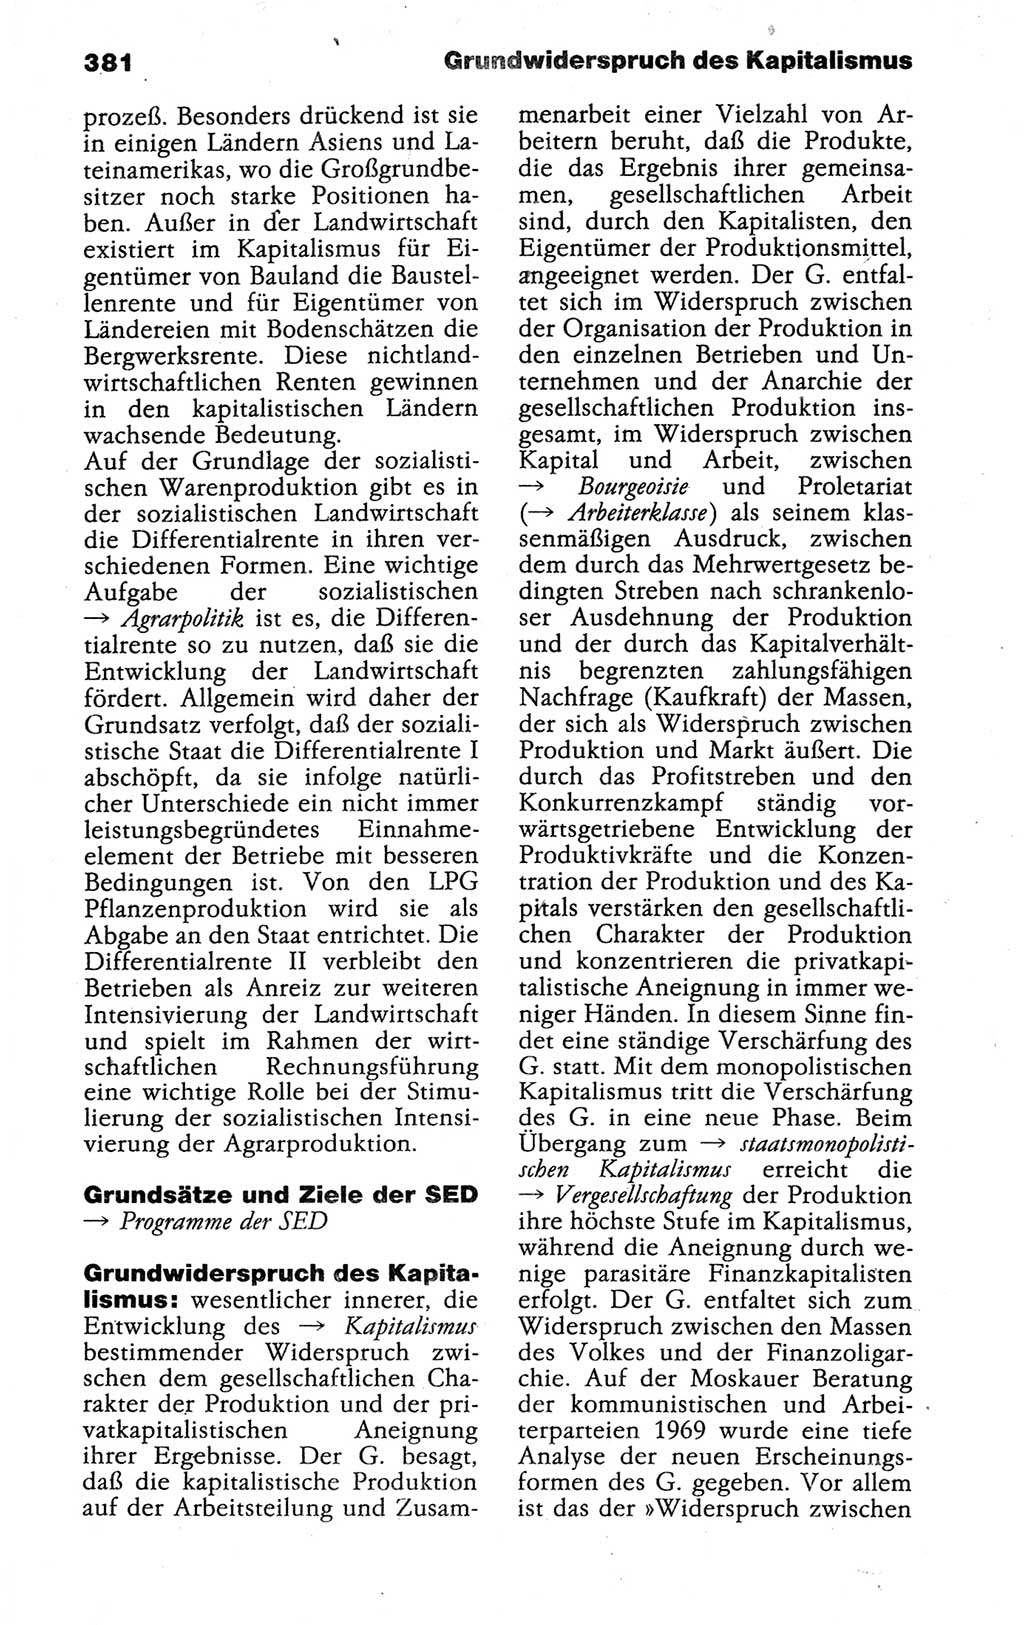 Kleines politisches Wörterbuch [Deutsche Demokratische Republik (DDR)] 1988, Seite 381 (Kl. pol. Wb. DDR 1988, S. 381)